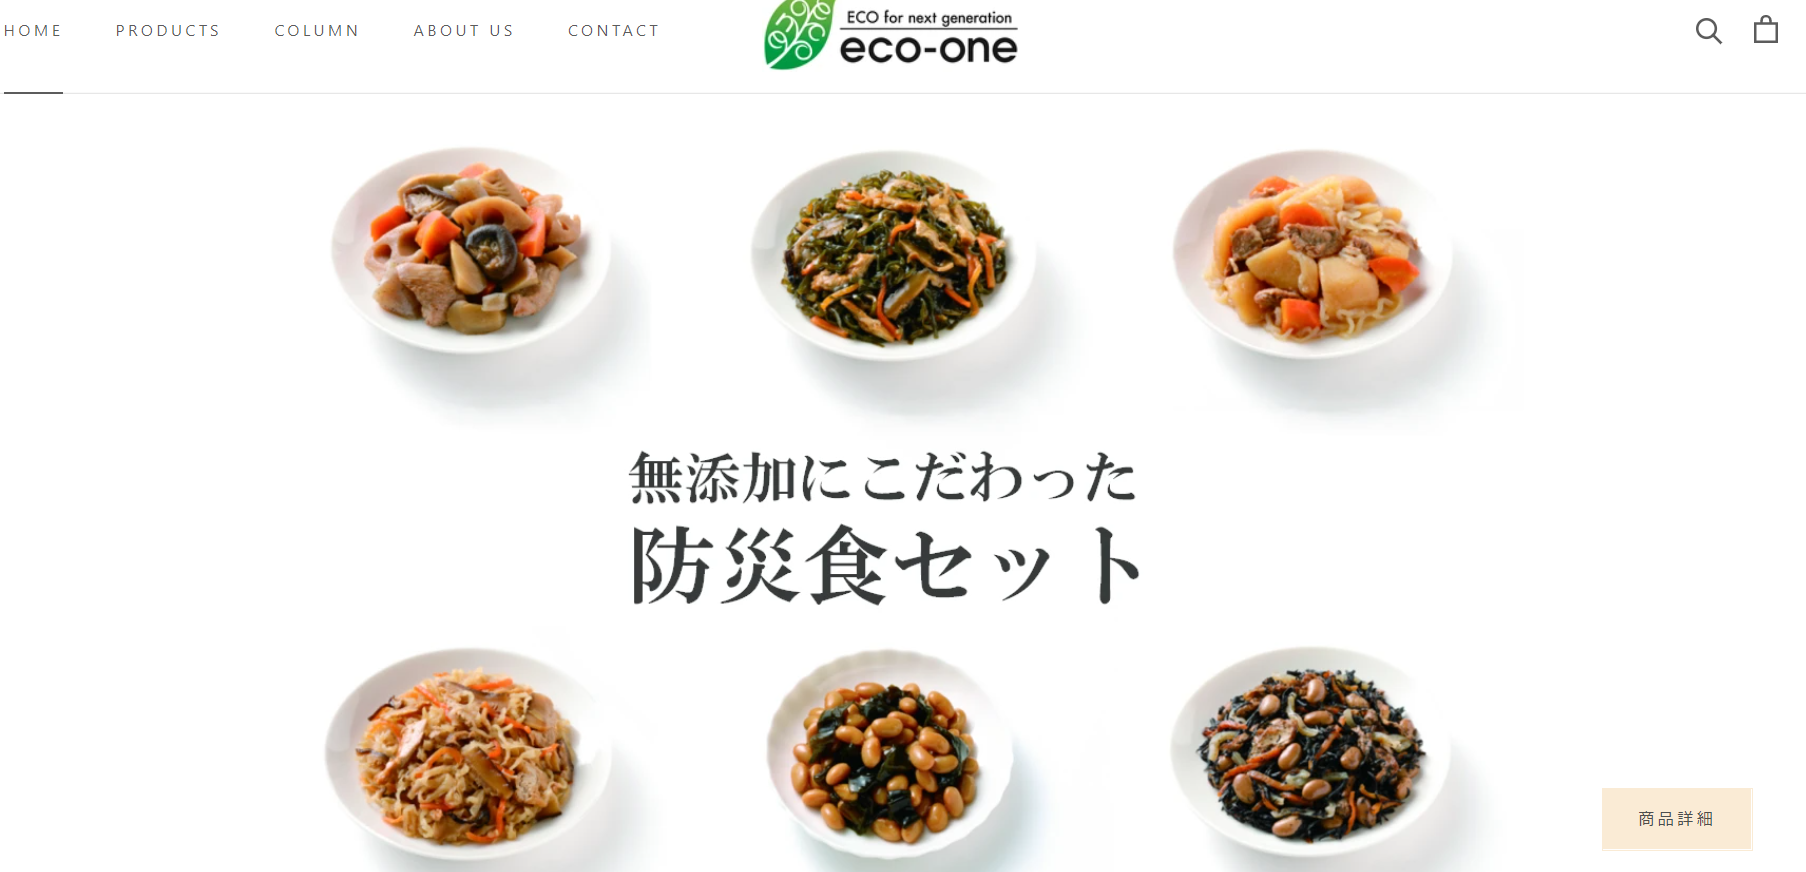 eco-one